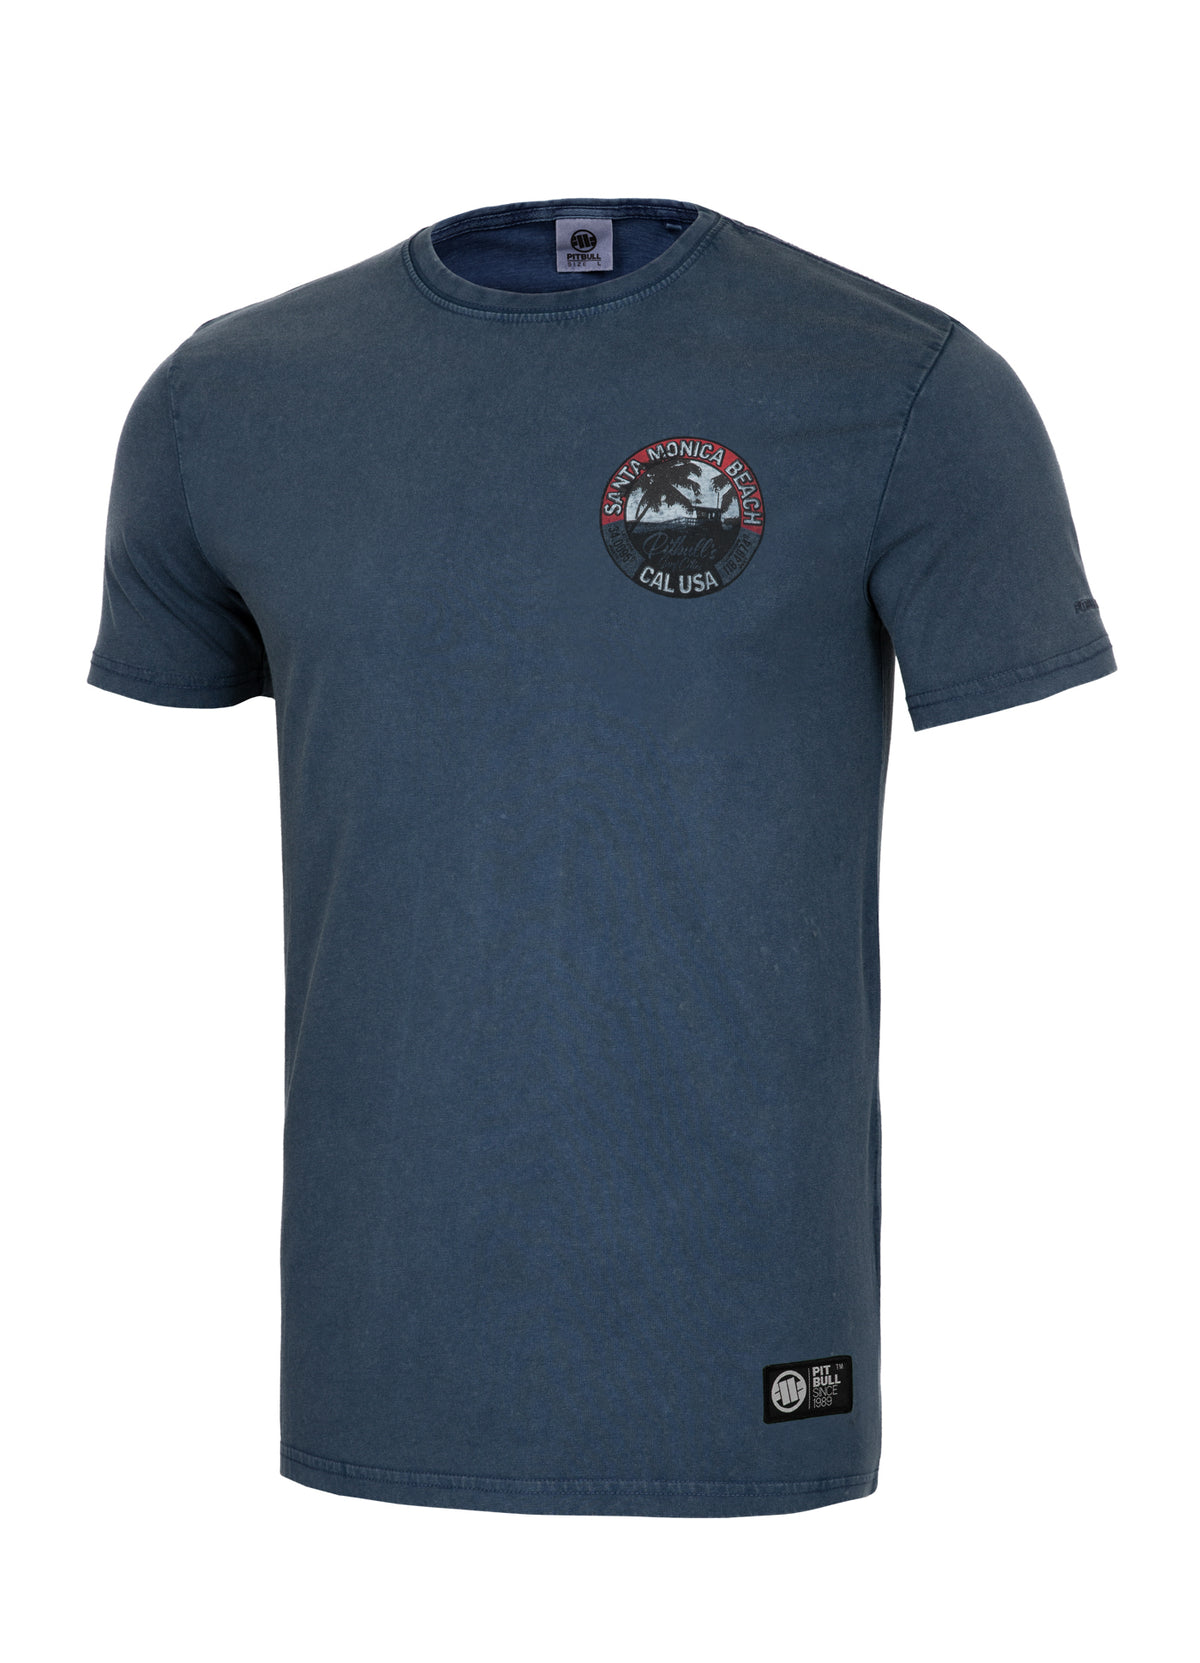 OCEANSIDE Dark Navy T-shirt - Pitbullstore.eu